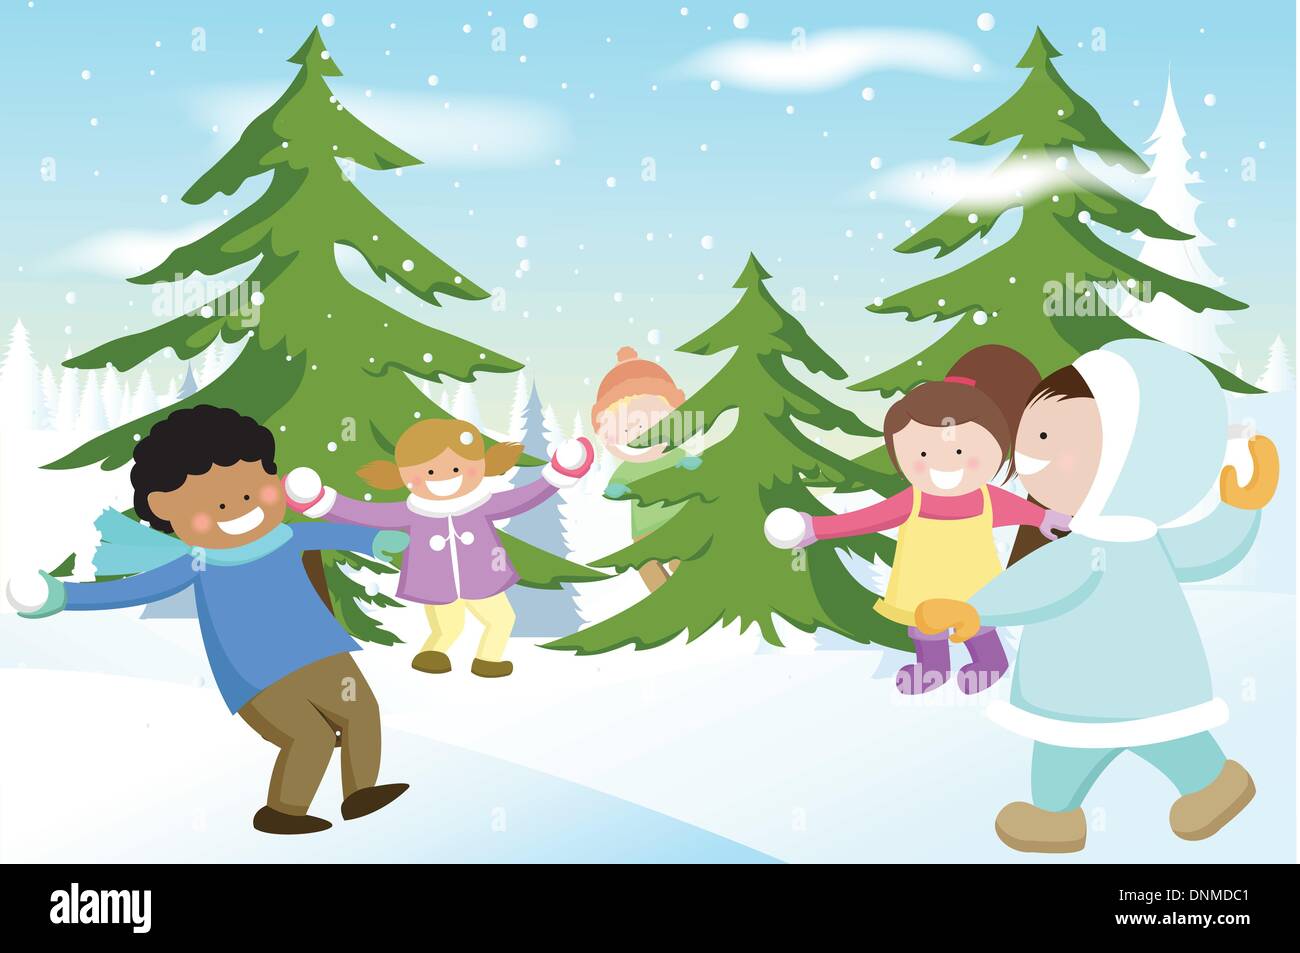 Eine Vektor-Illustration von einer Gruppe von Kindern spielen Schneebälle Stock Vektor